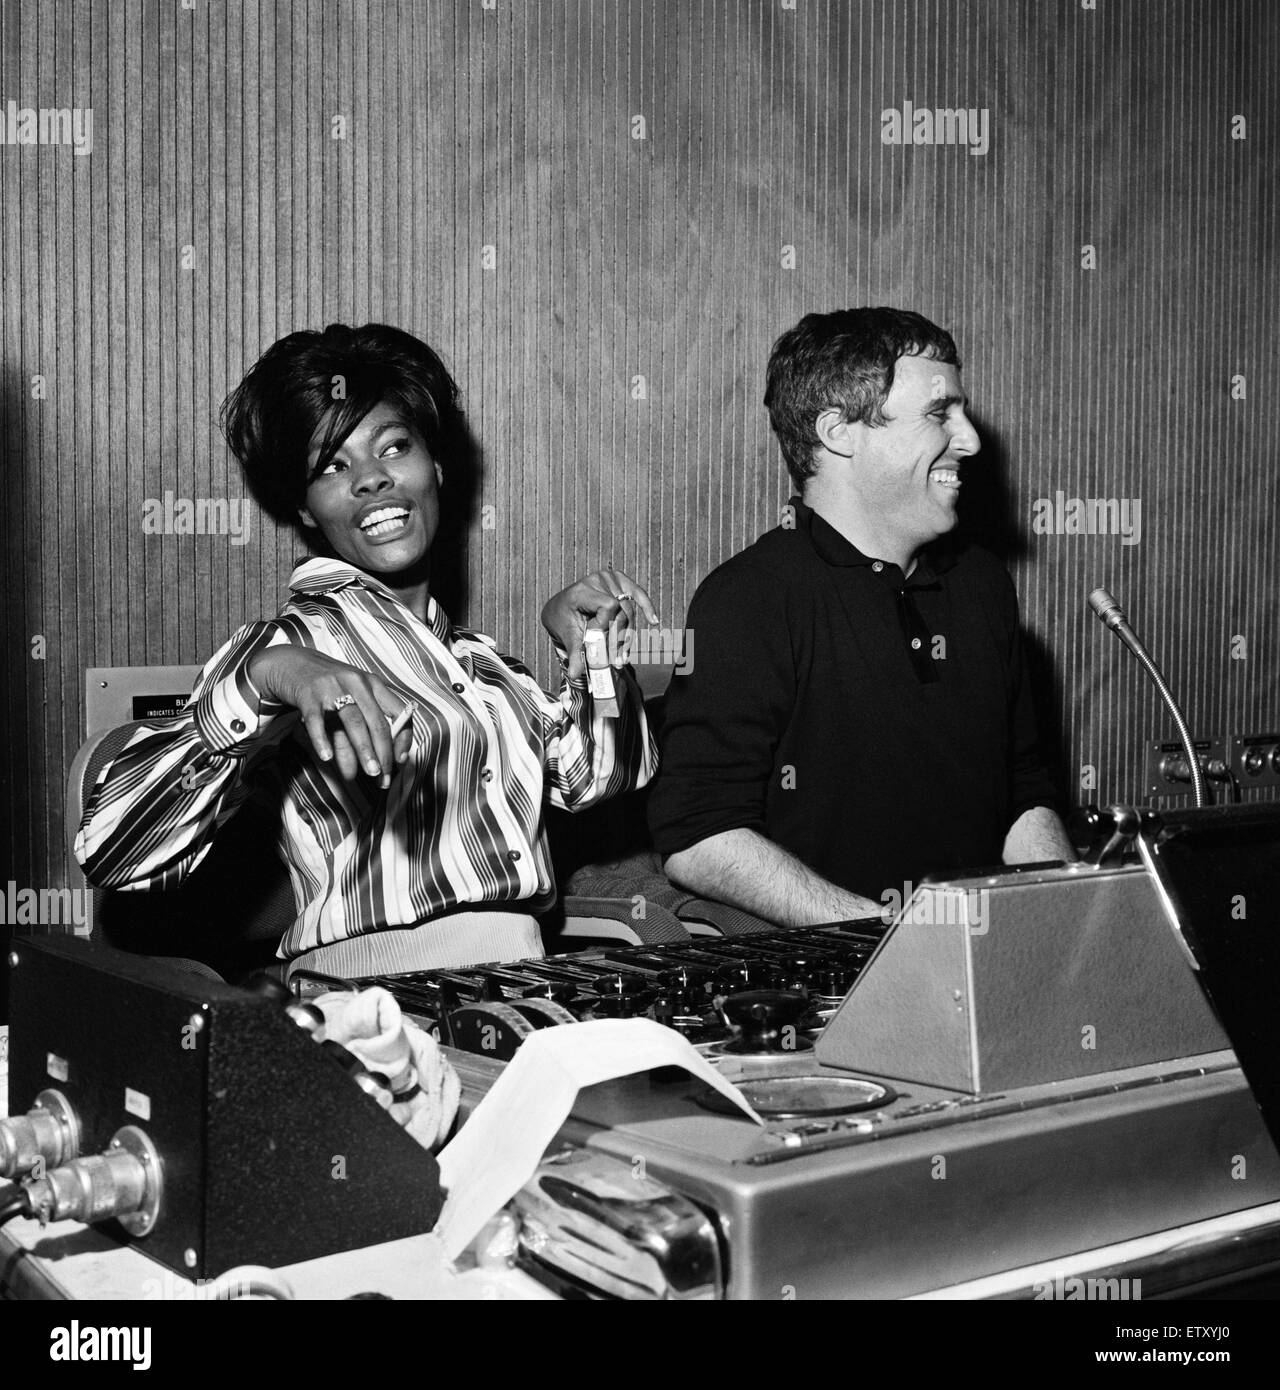 Burt Bacharach et Dionne Warwick L'enregistrement d'un morceau à l'Pye studios à Londres. Au panneaux de contrôle, un heureux Dionne et Burt écoutez l'enregistrement. 29 novembre 1964. Banque D'Images